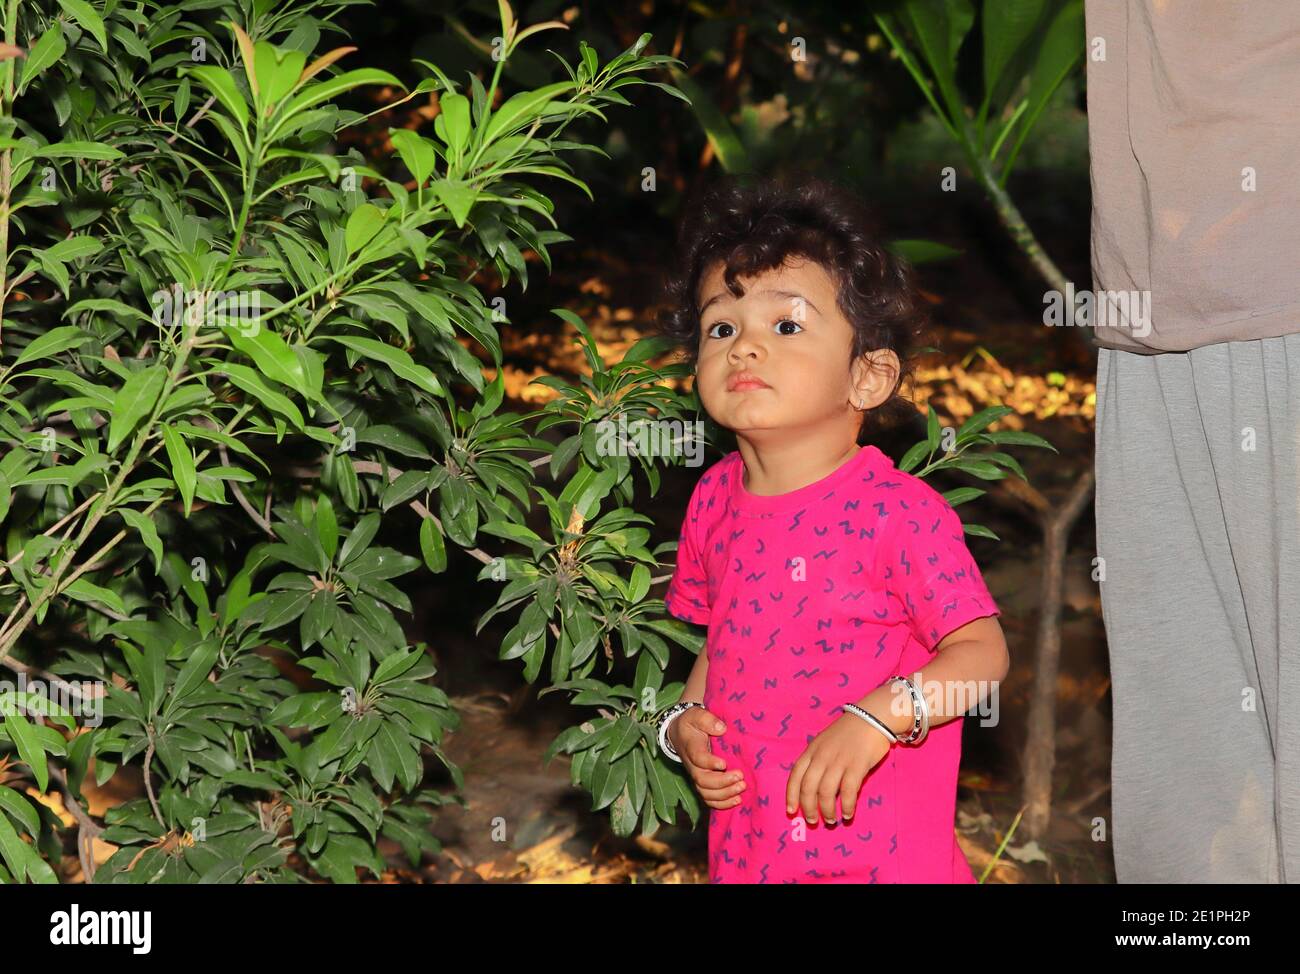 Ein schönes indisches Kind lächelt an der Chiku-Pflanze im Garten, indisches Kinderporträt im Garten Stockfoto